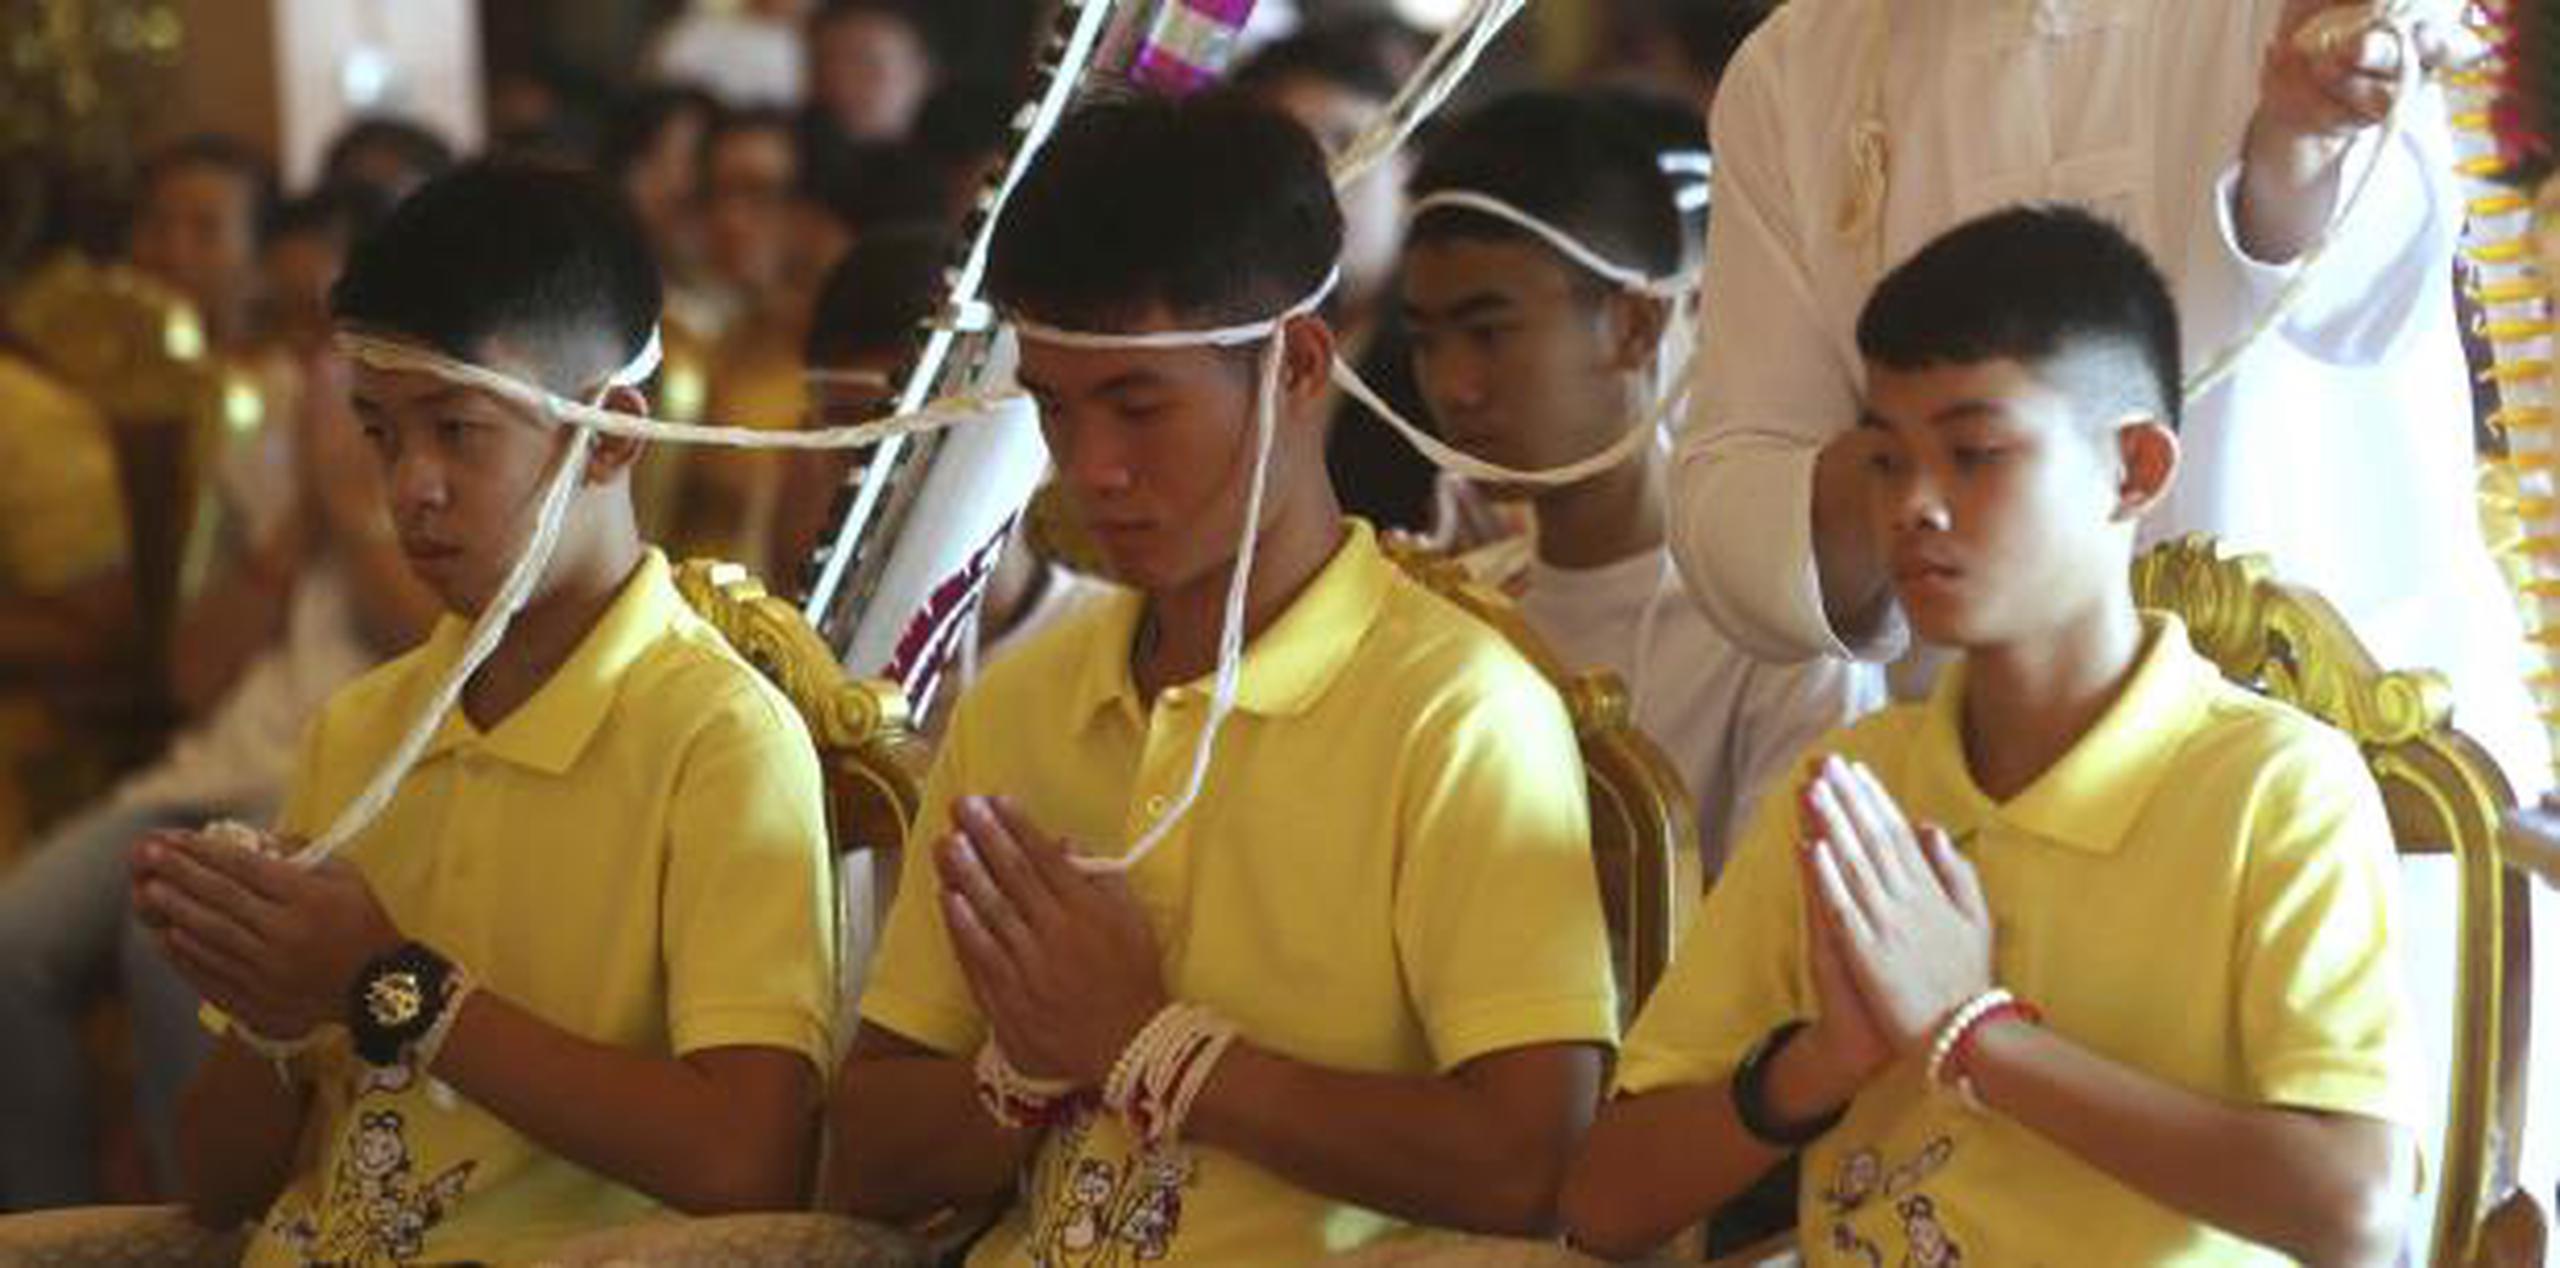 El equipo ya había dicho que se ordenarían como novicios budistas para honrar al exbuzo de la Armada tailandesa que murió en la cueva. (AP / Sakchai Lalit)